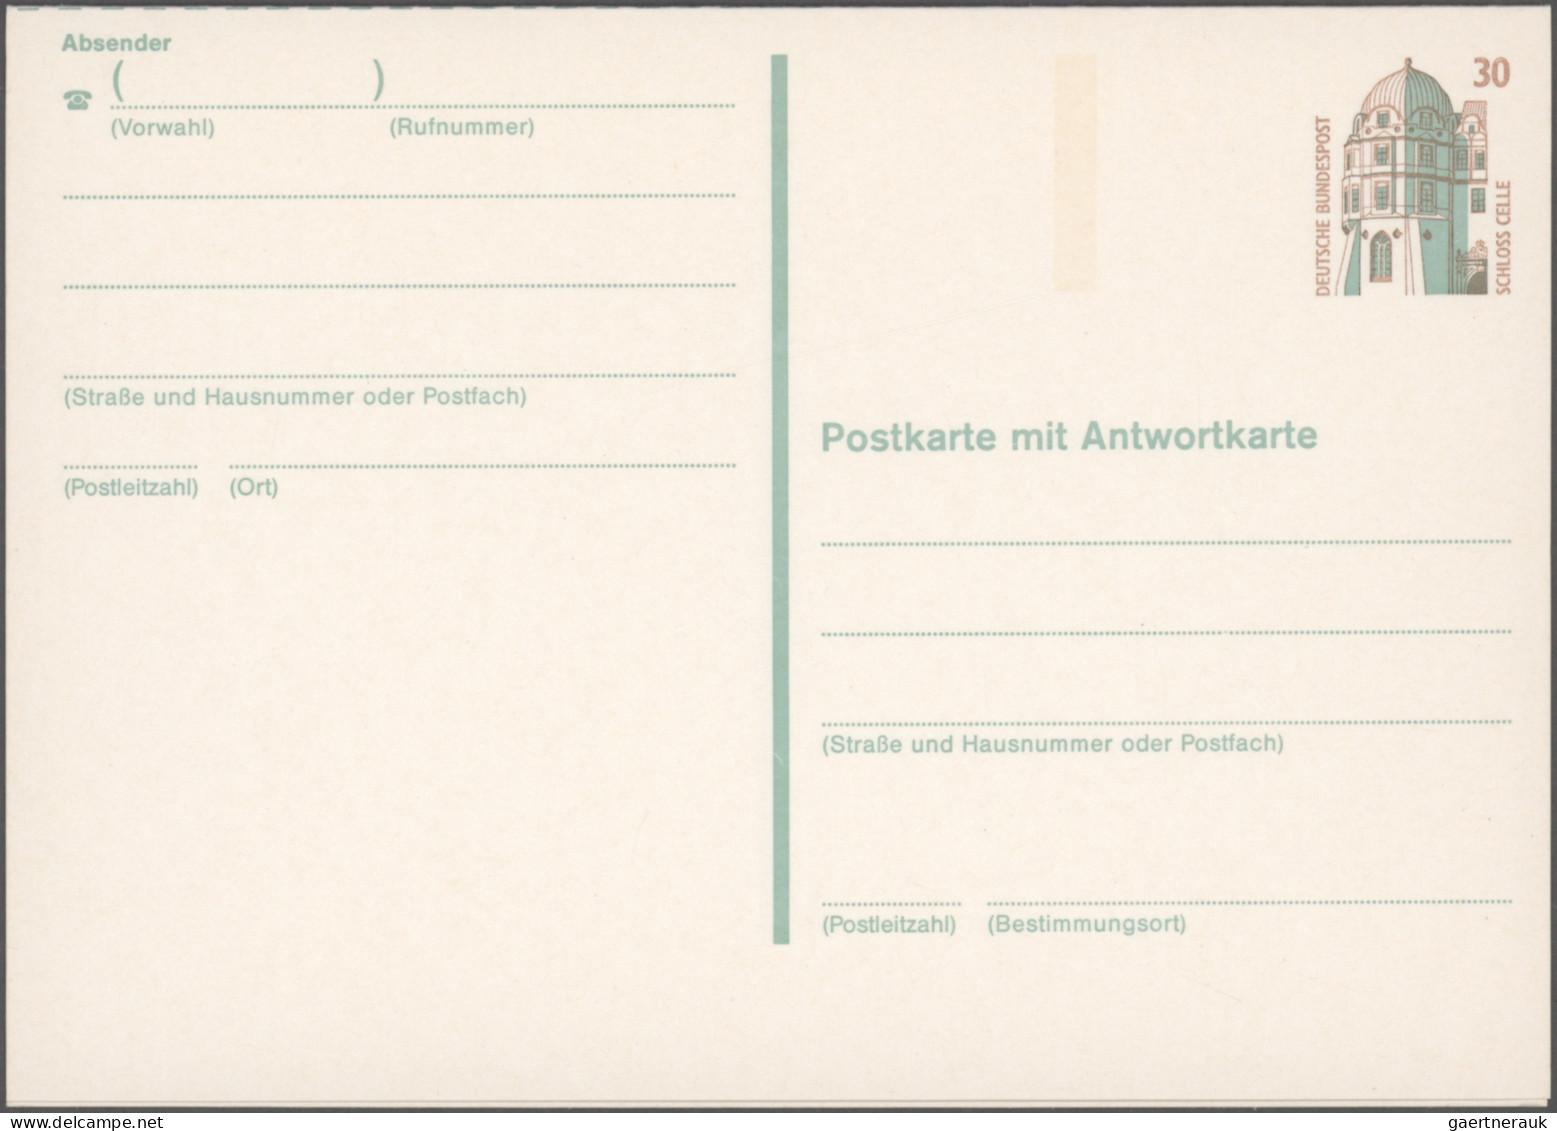 Bundesrepublik - Ganzsachen: 1958/1990, Spezial-Partie "Abarten und Besonderheit